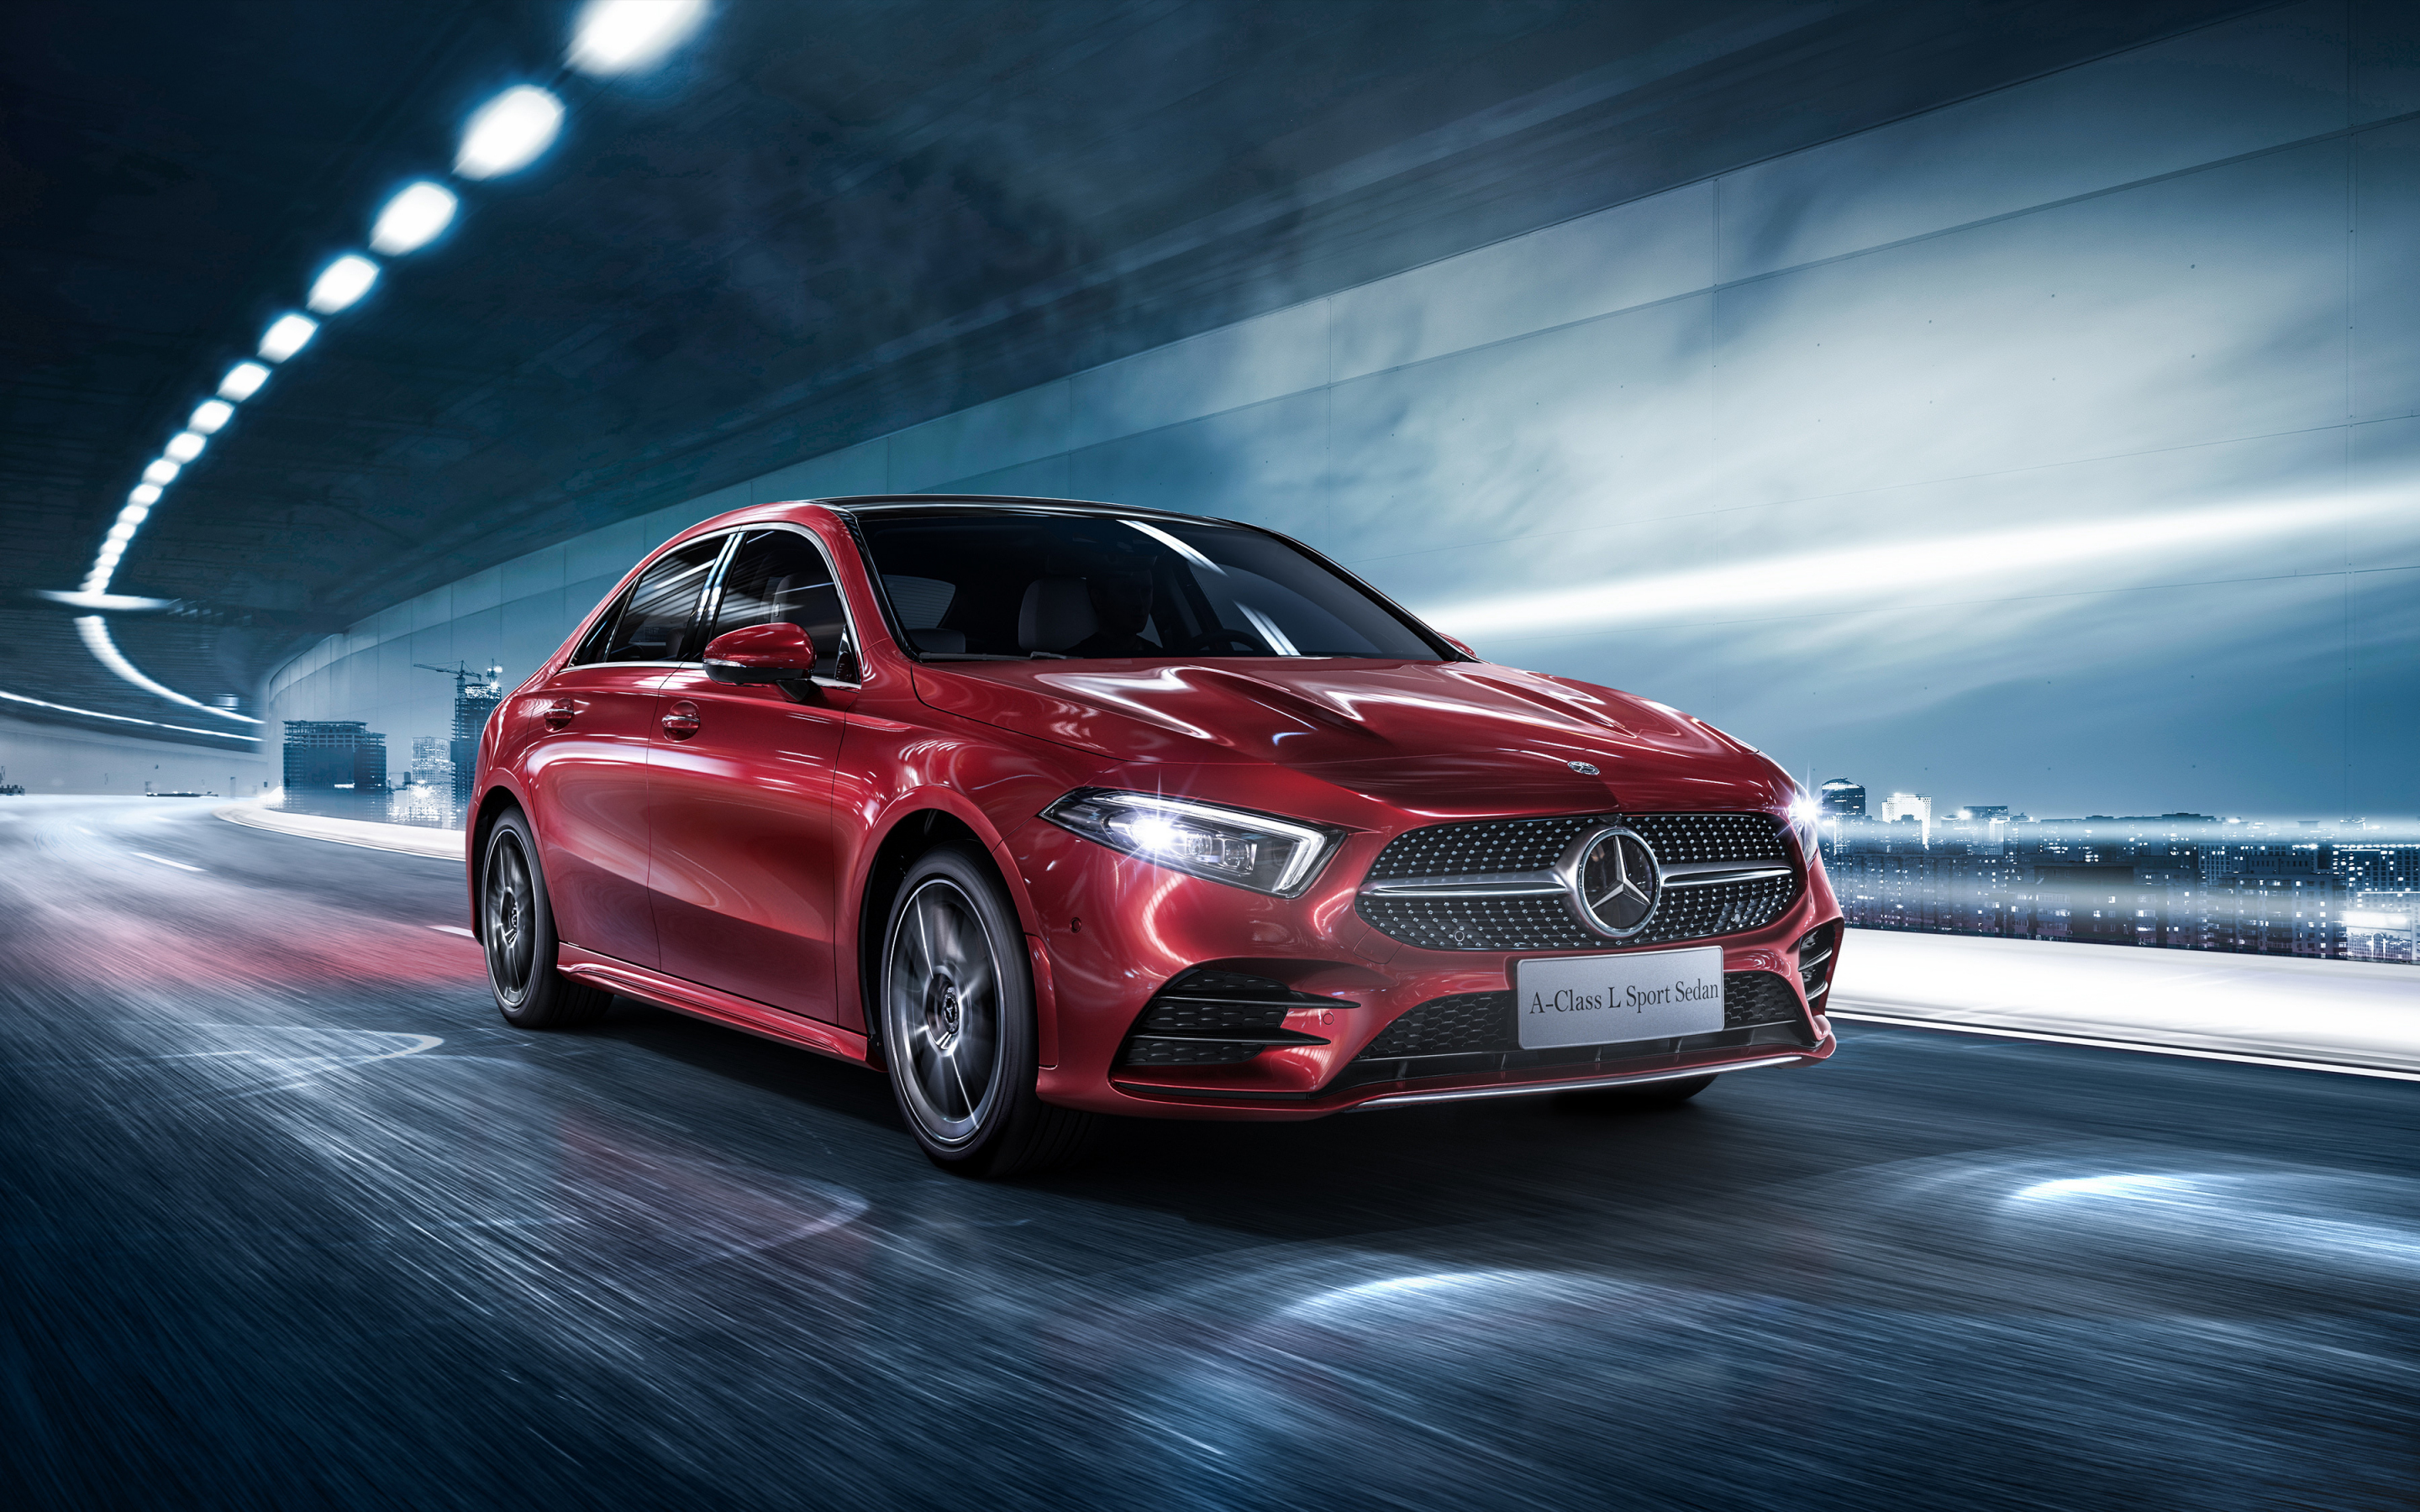 2018 Mercedes-Benz A200 L Sport Sedan, red, 2880x1800 wallpaper